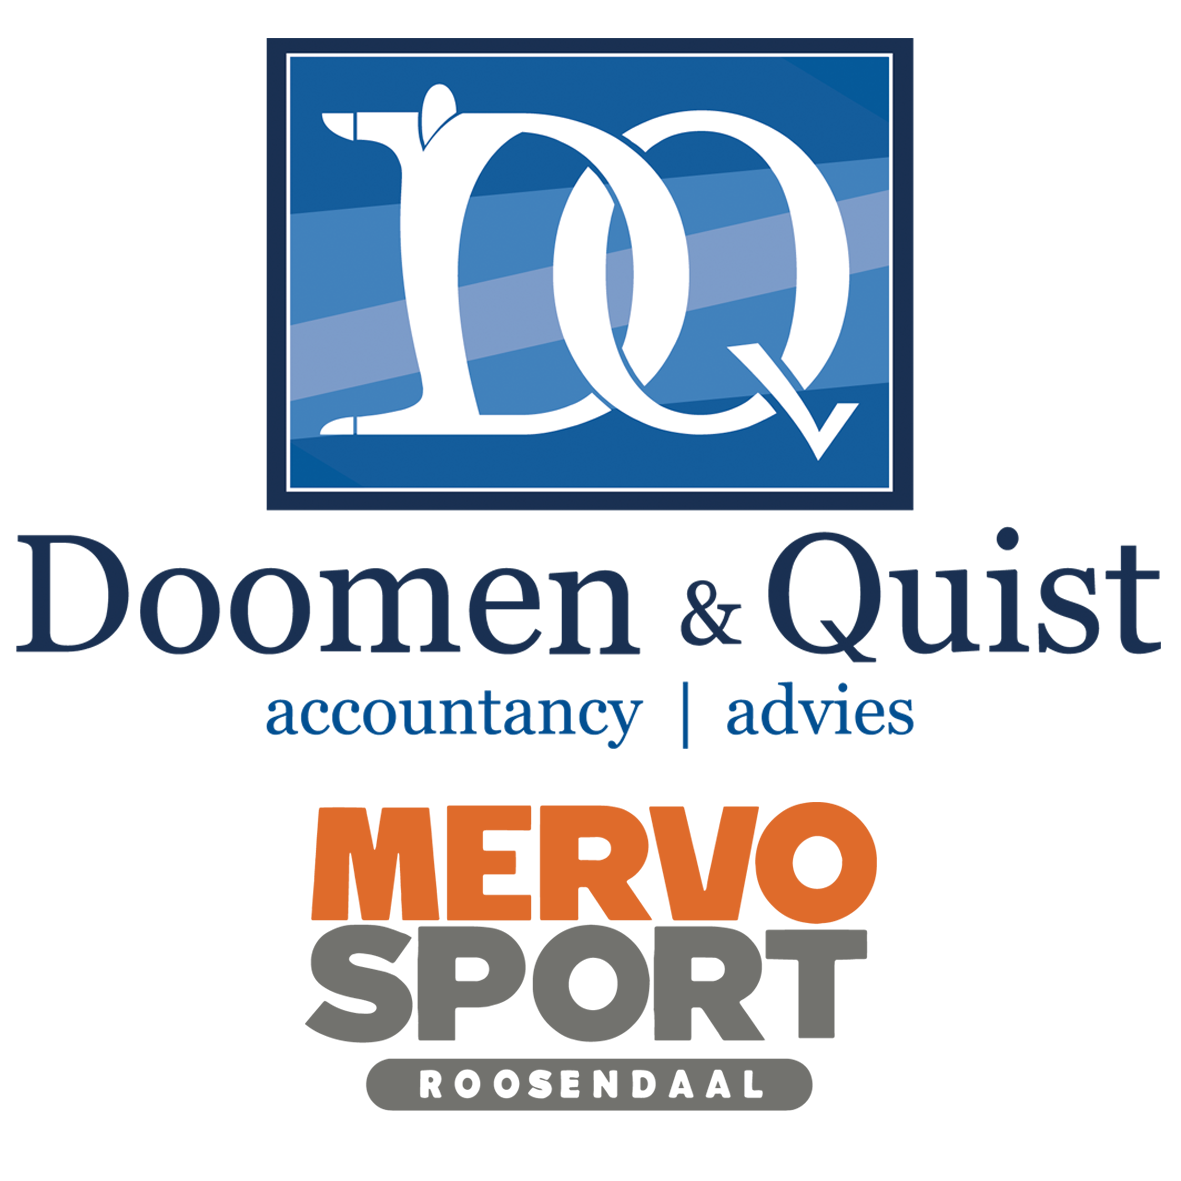 Doomen & Quist - Mervosport